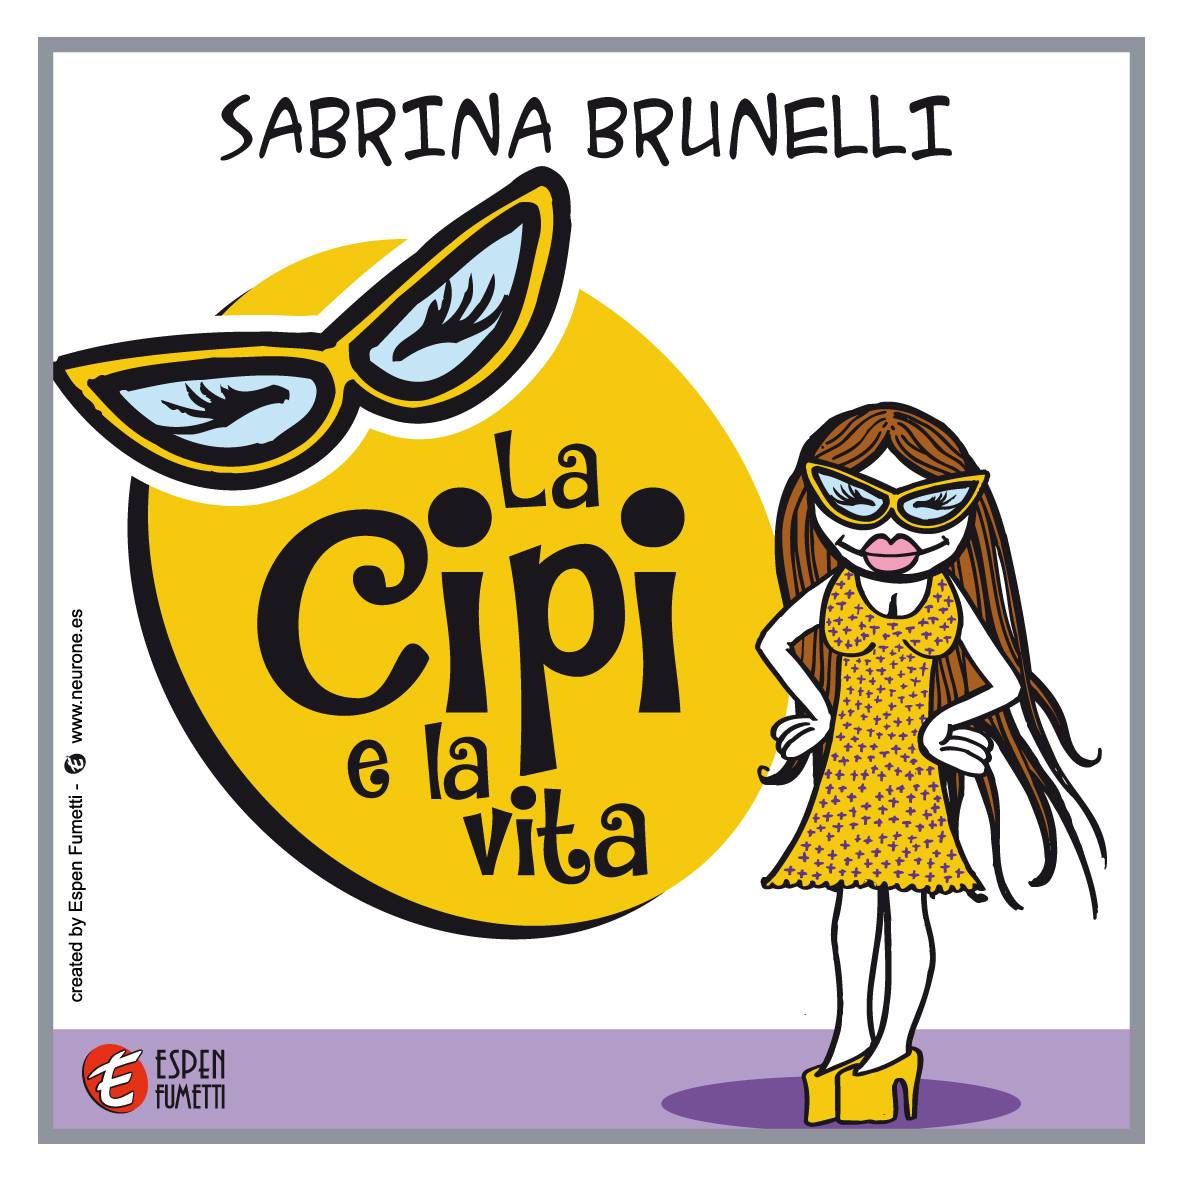 La Cipi e la vita di Sabrina Brunelli